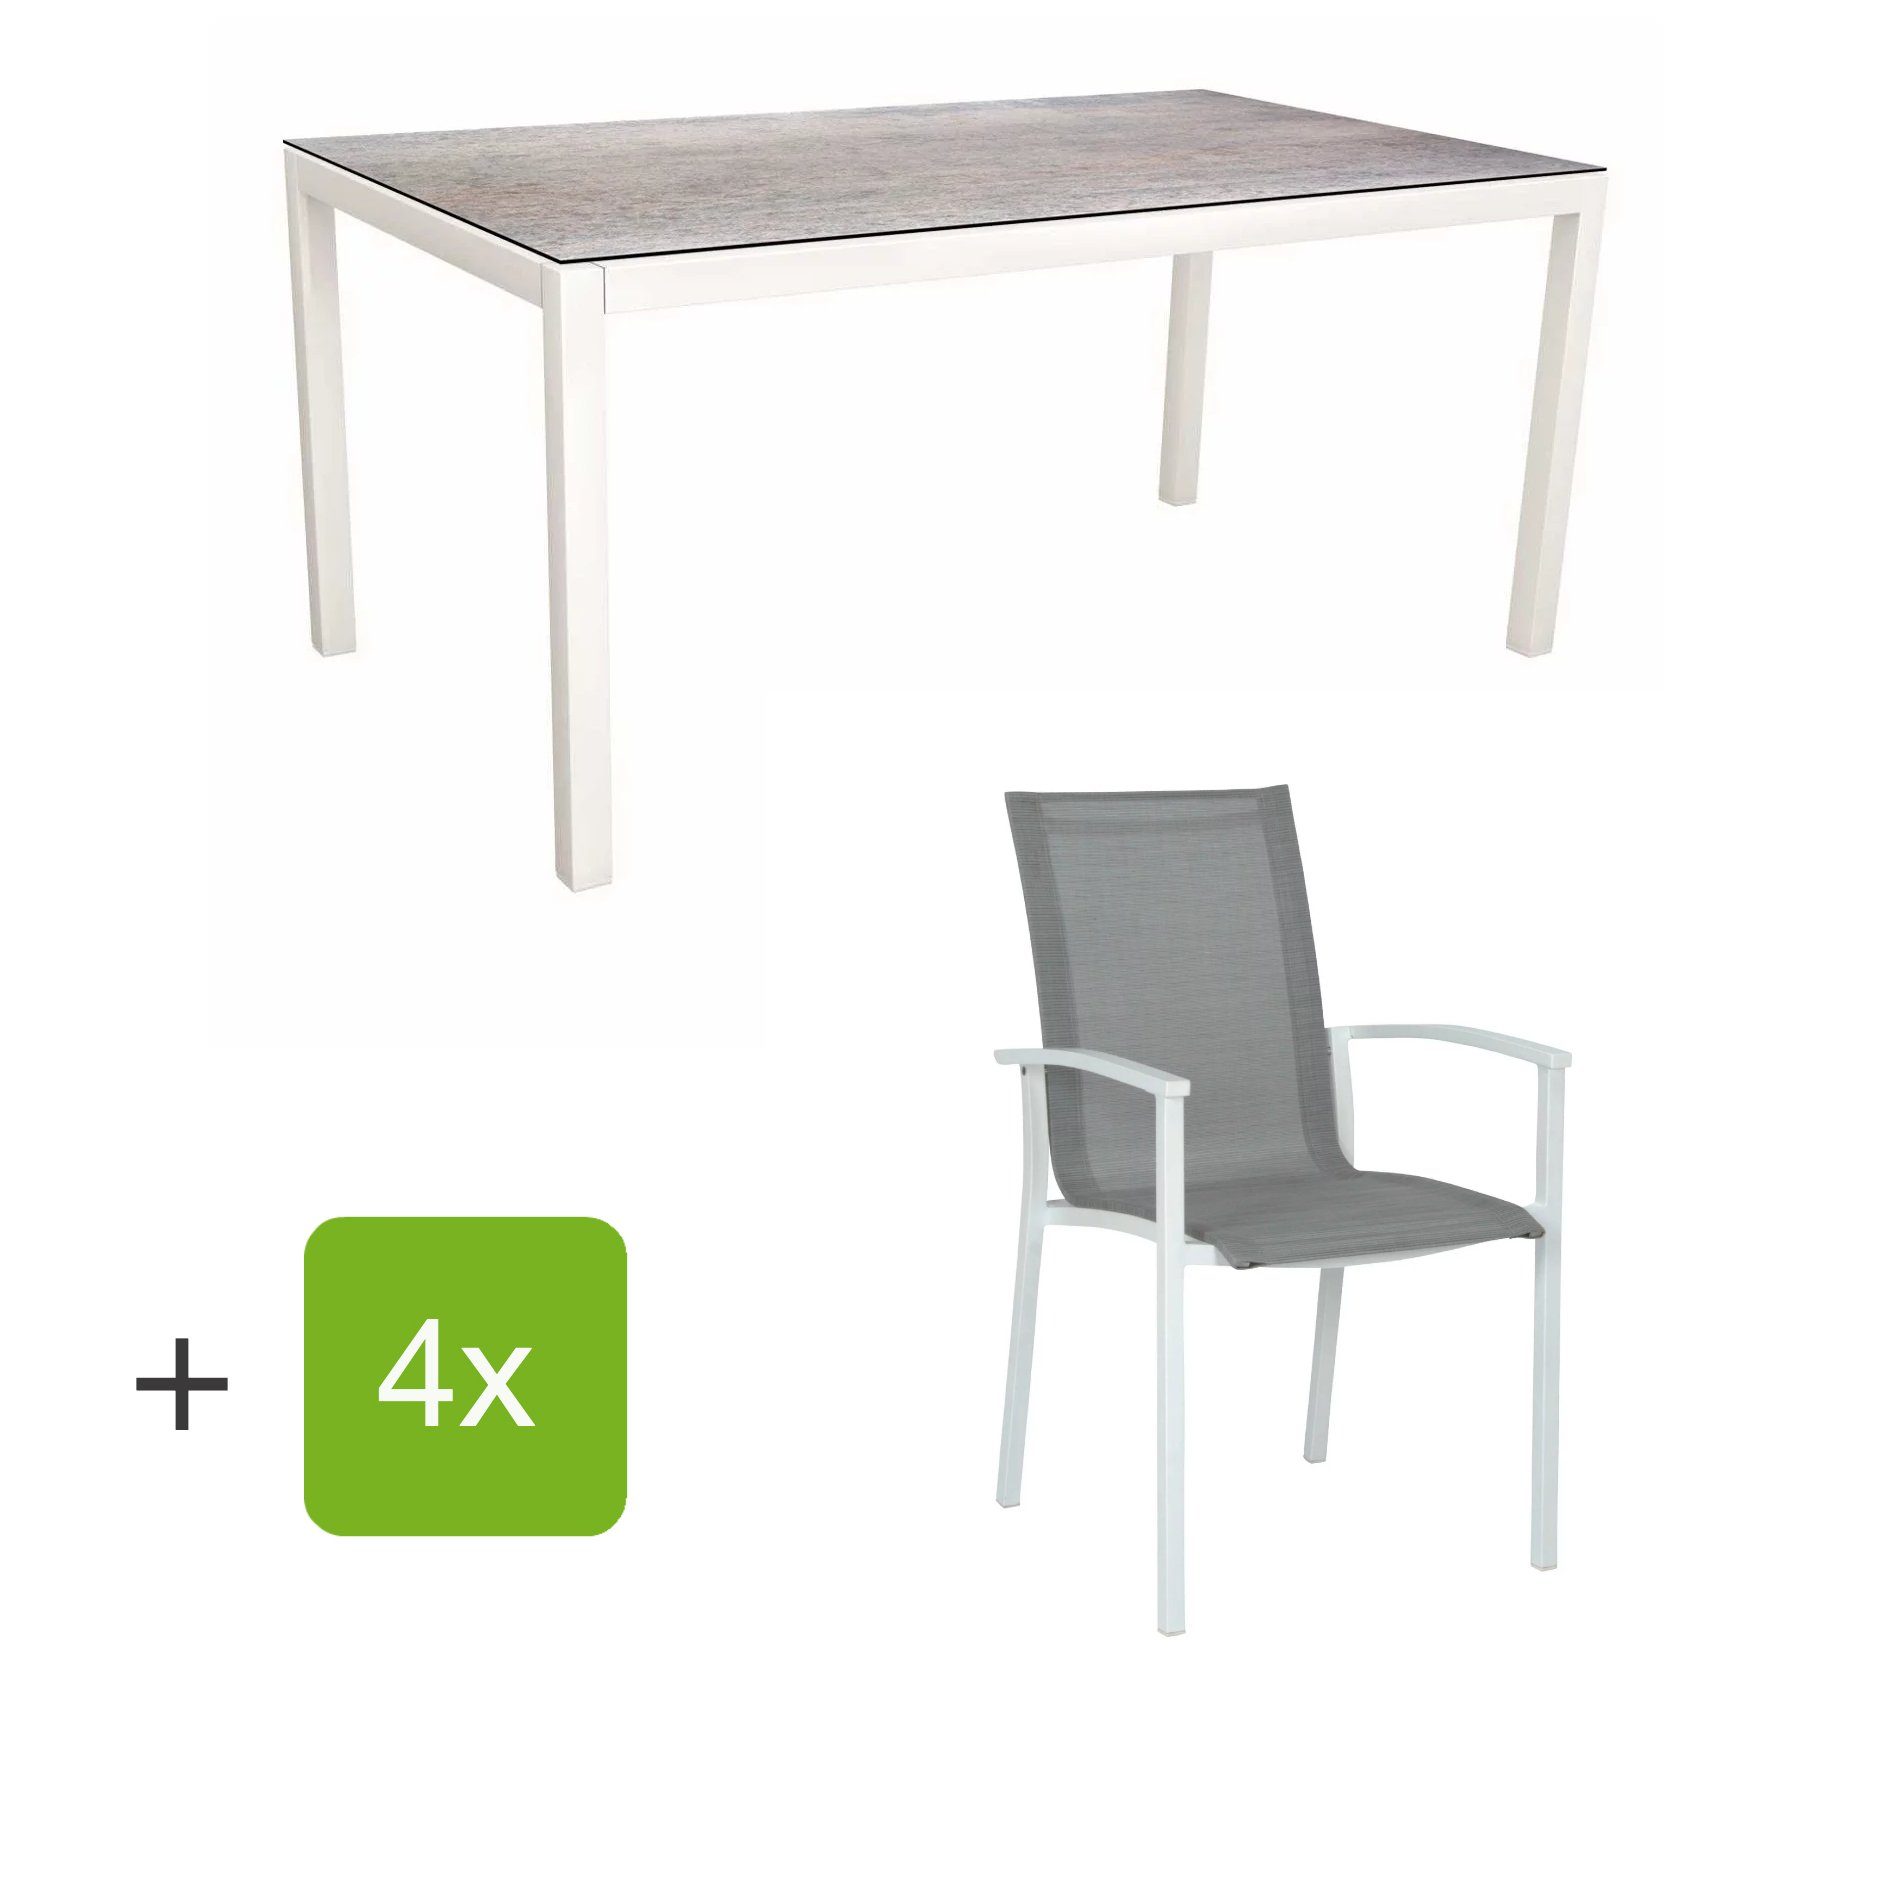 Stern Gartenmöbel-Set "Evoee", Gestelle Aluminium weiß, Sitzfläche Textilgewebe silberfarben, Tischplatte HPL Smoky